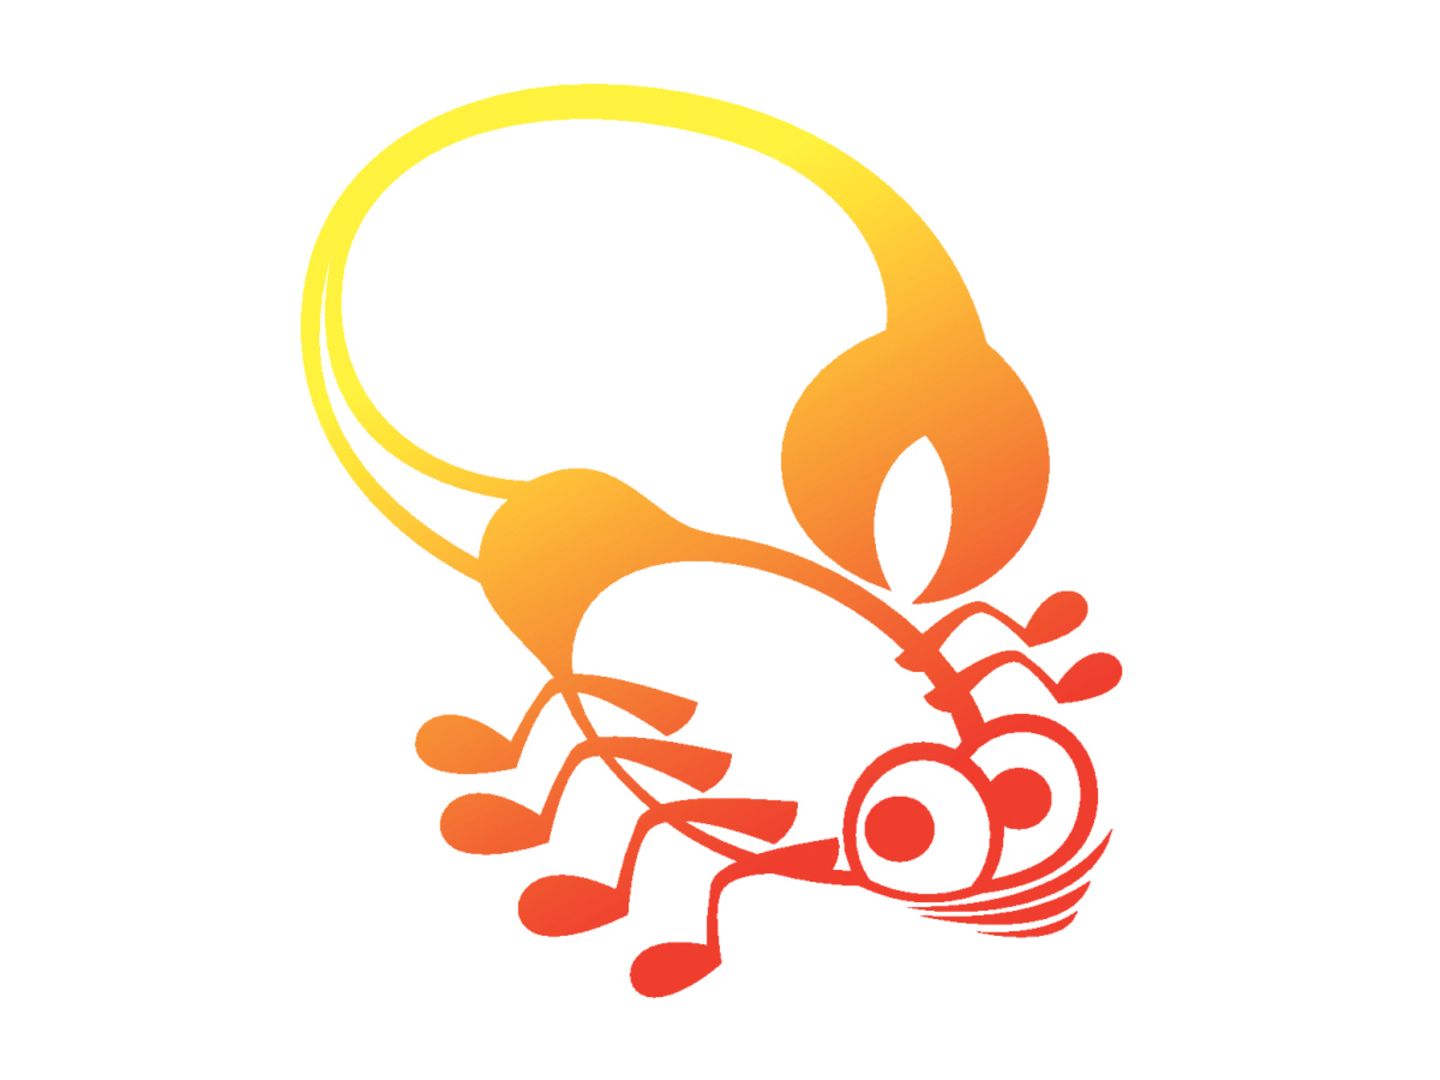 Sternzeichen Skorpion: Illustration des Sternzeichens Skorpion